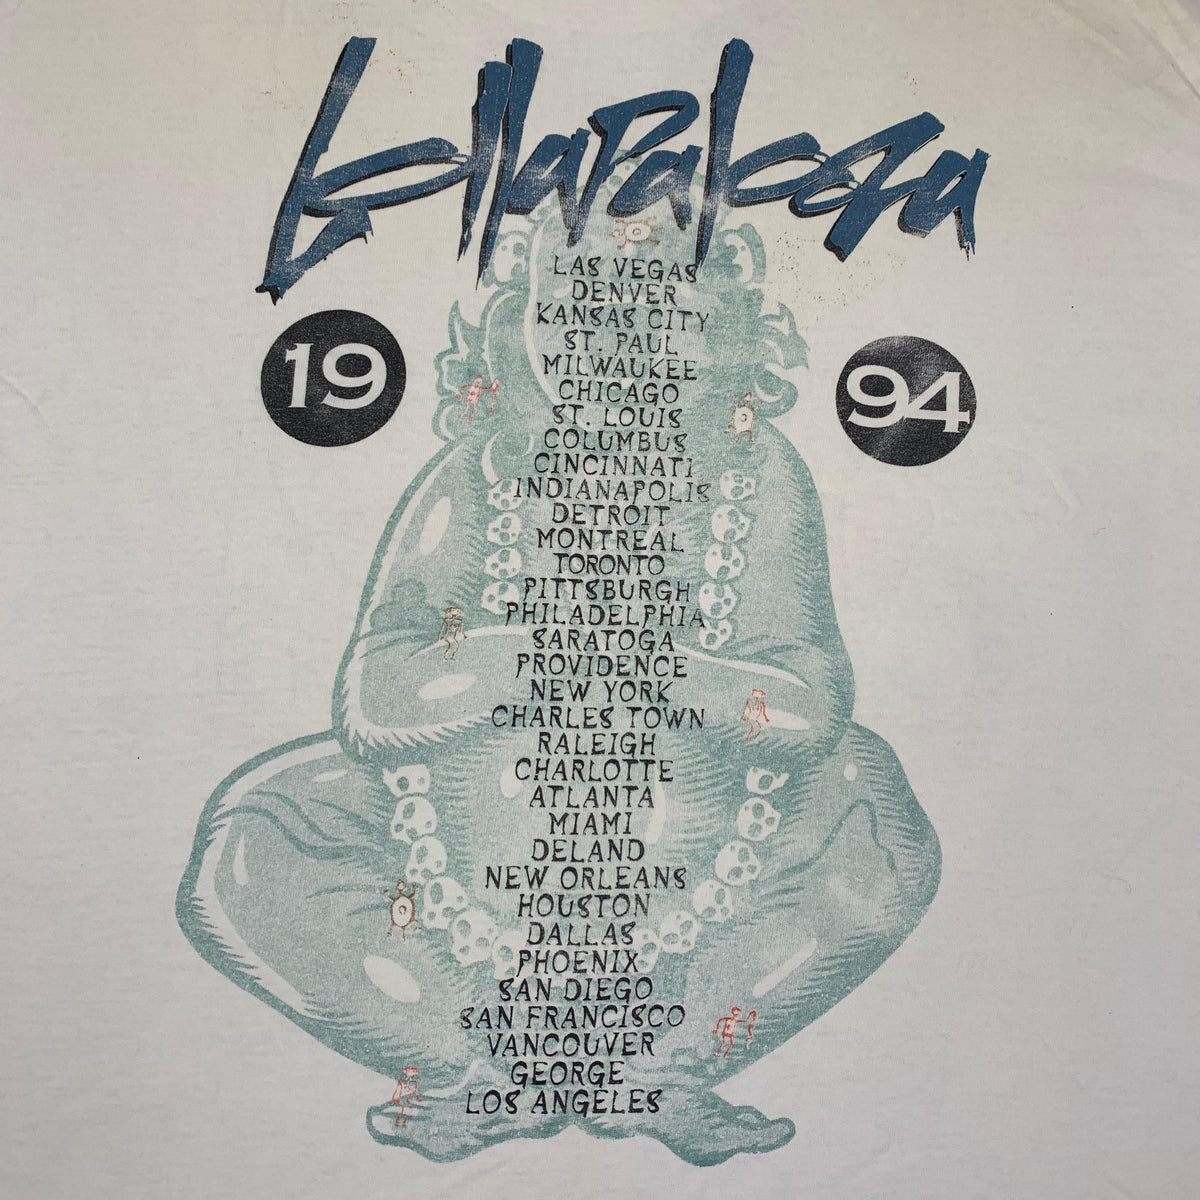 Vintage Lollapalooza &quot;1994&quot; T-Shirt - jointcustodydc